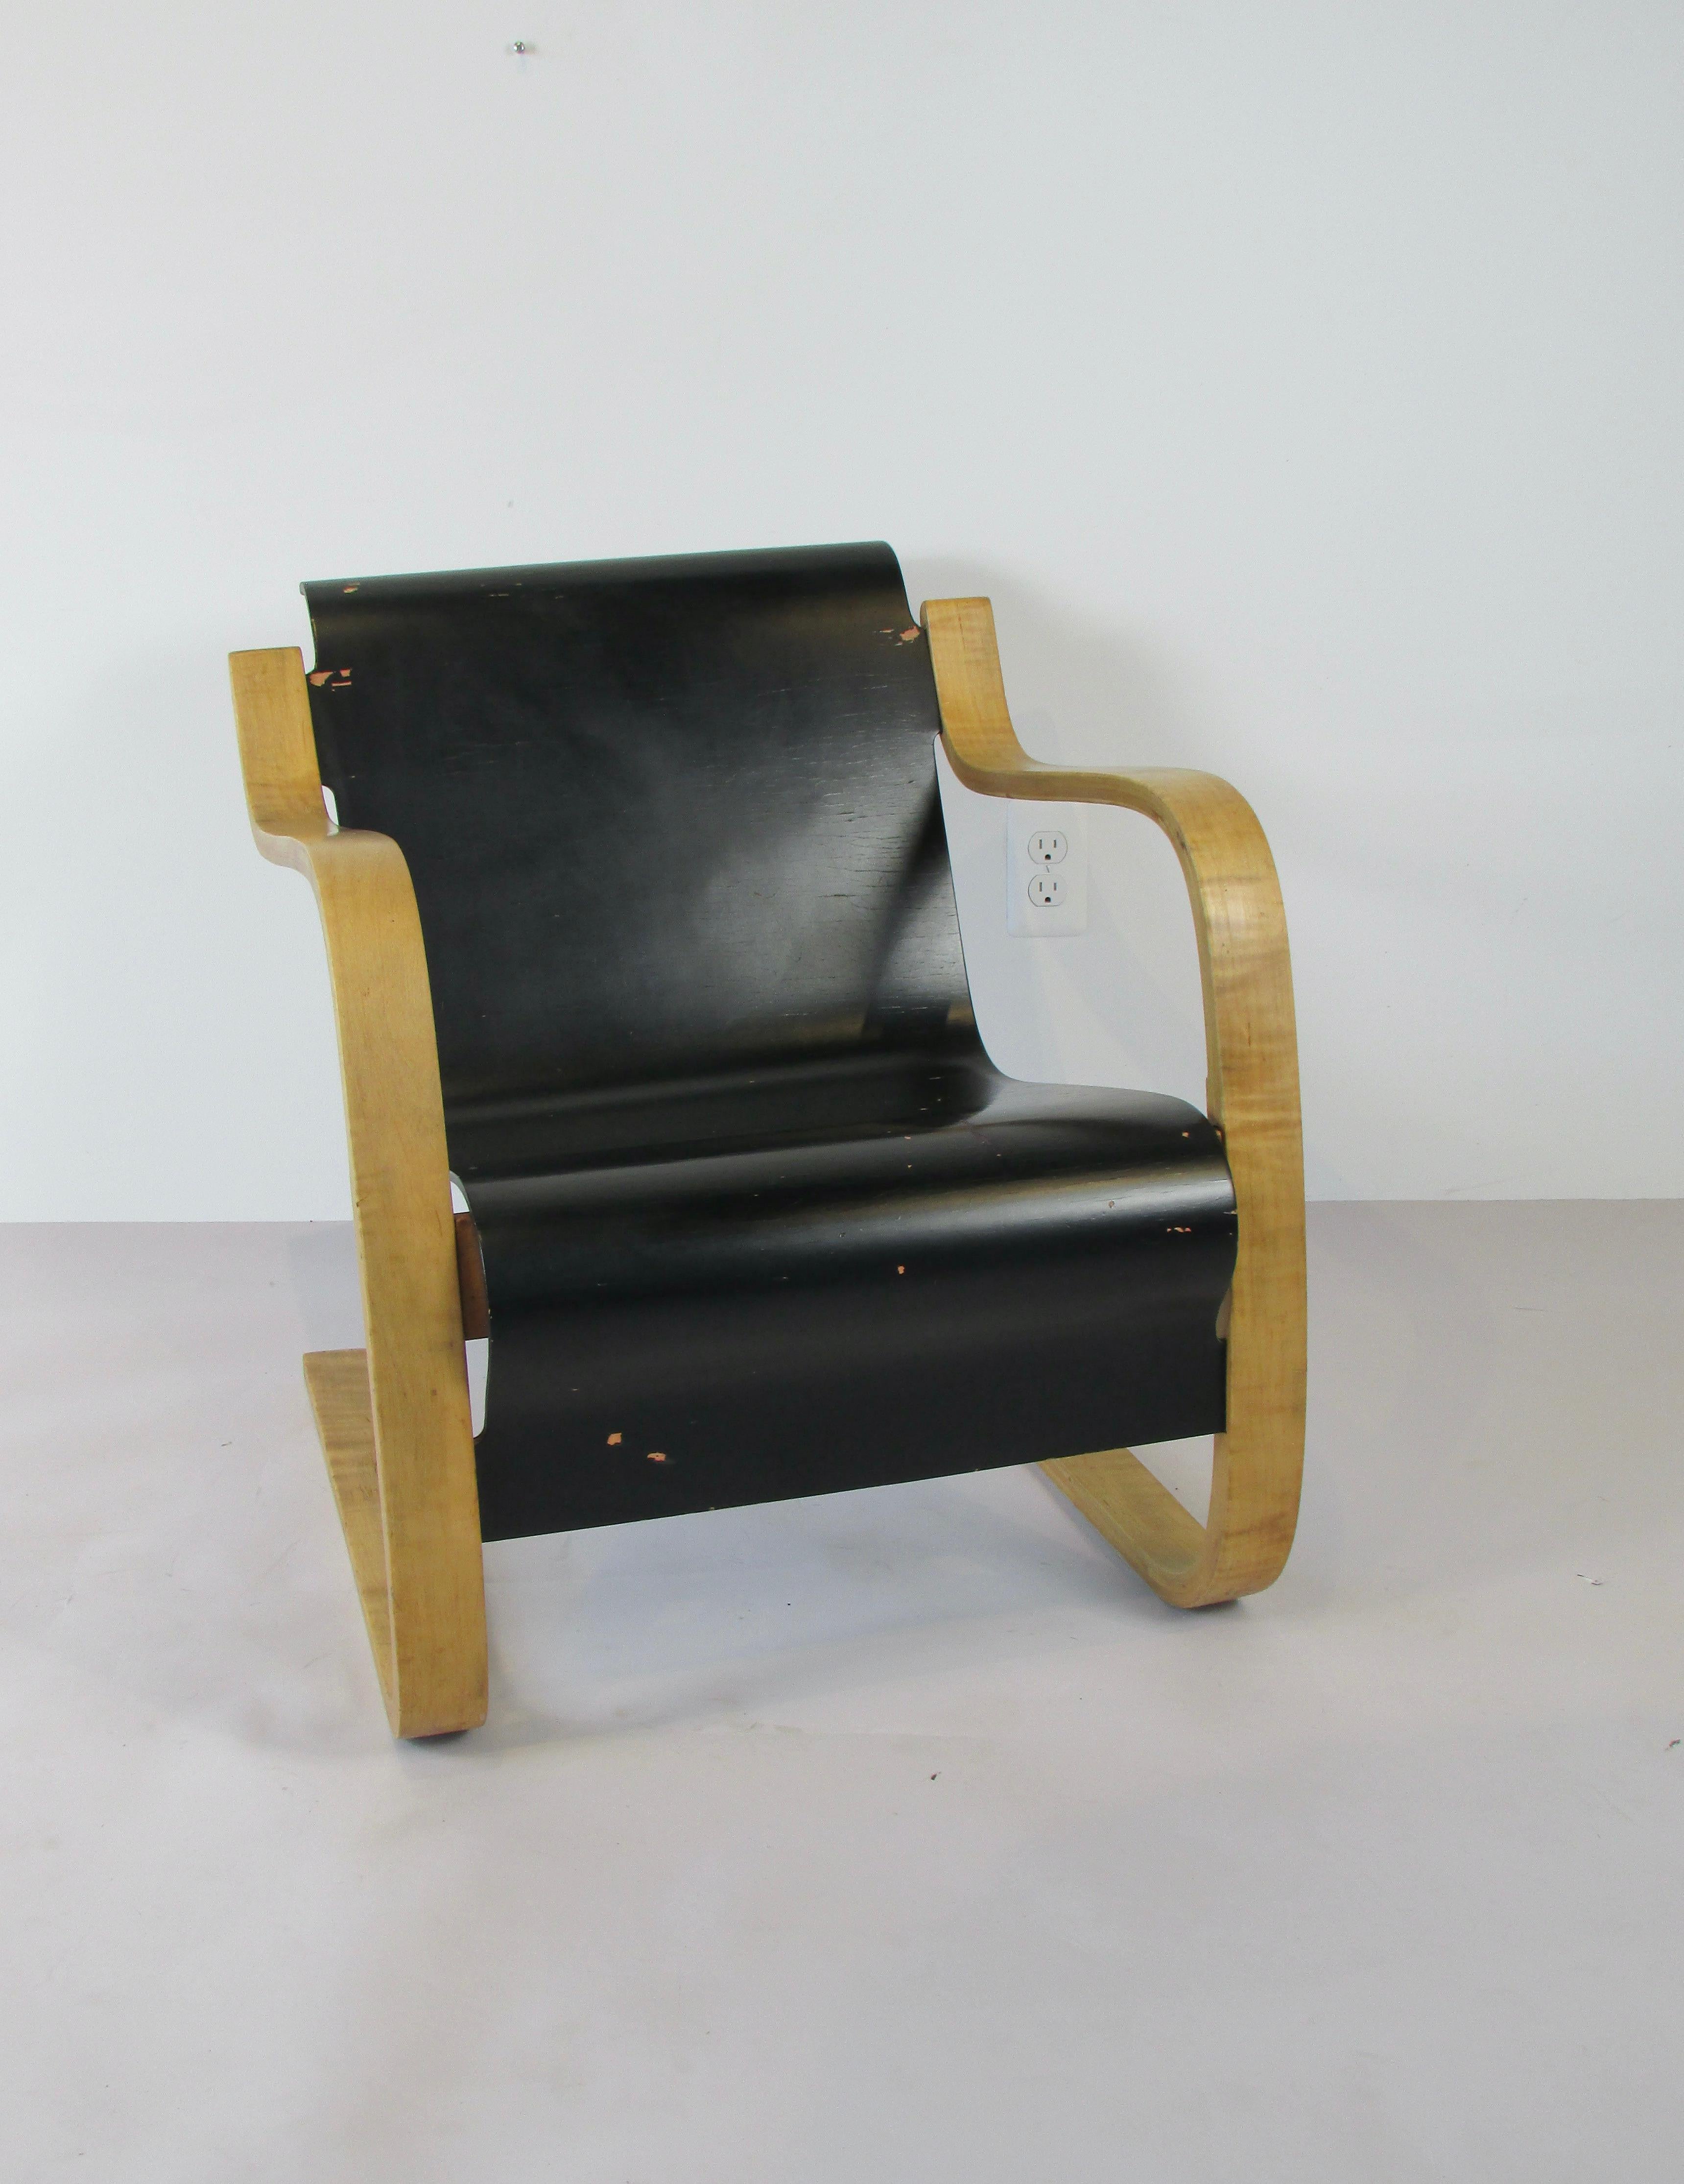 Je pense qu'il s'agit d'une chaise de production précoce en finition originale quelque peu usée. L'un des nombreux projets conçus par l'architecte finlandais Alvar Aalto lors de la construction d'un sanatorium pour tuberculeux à Paimio, en Finlande.